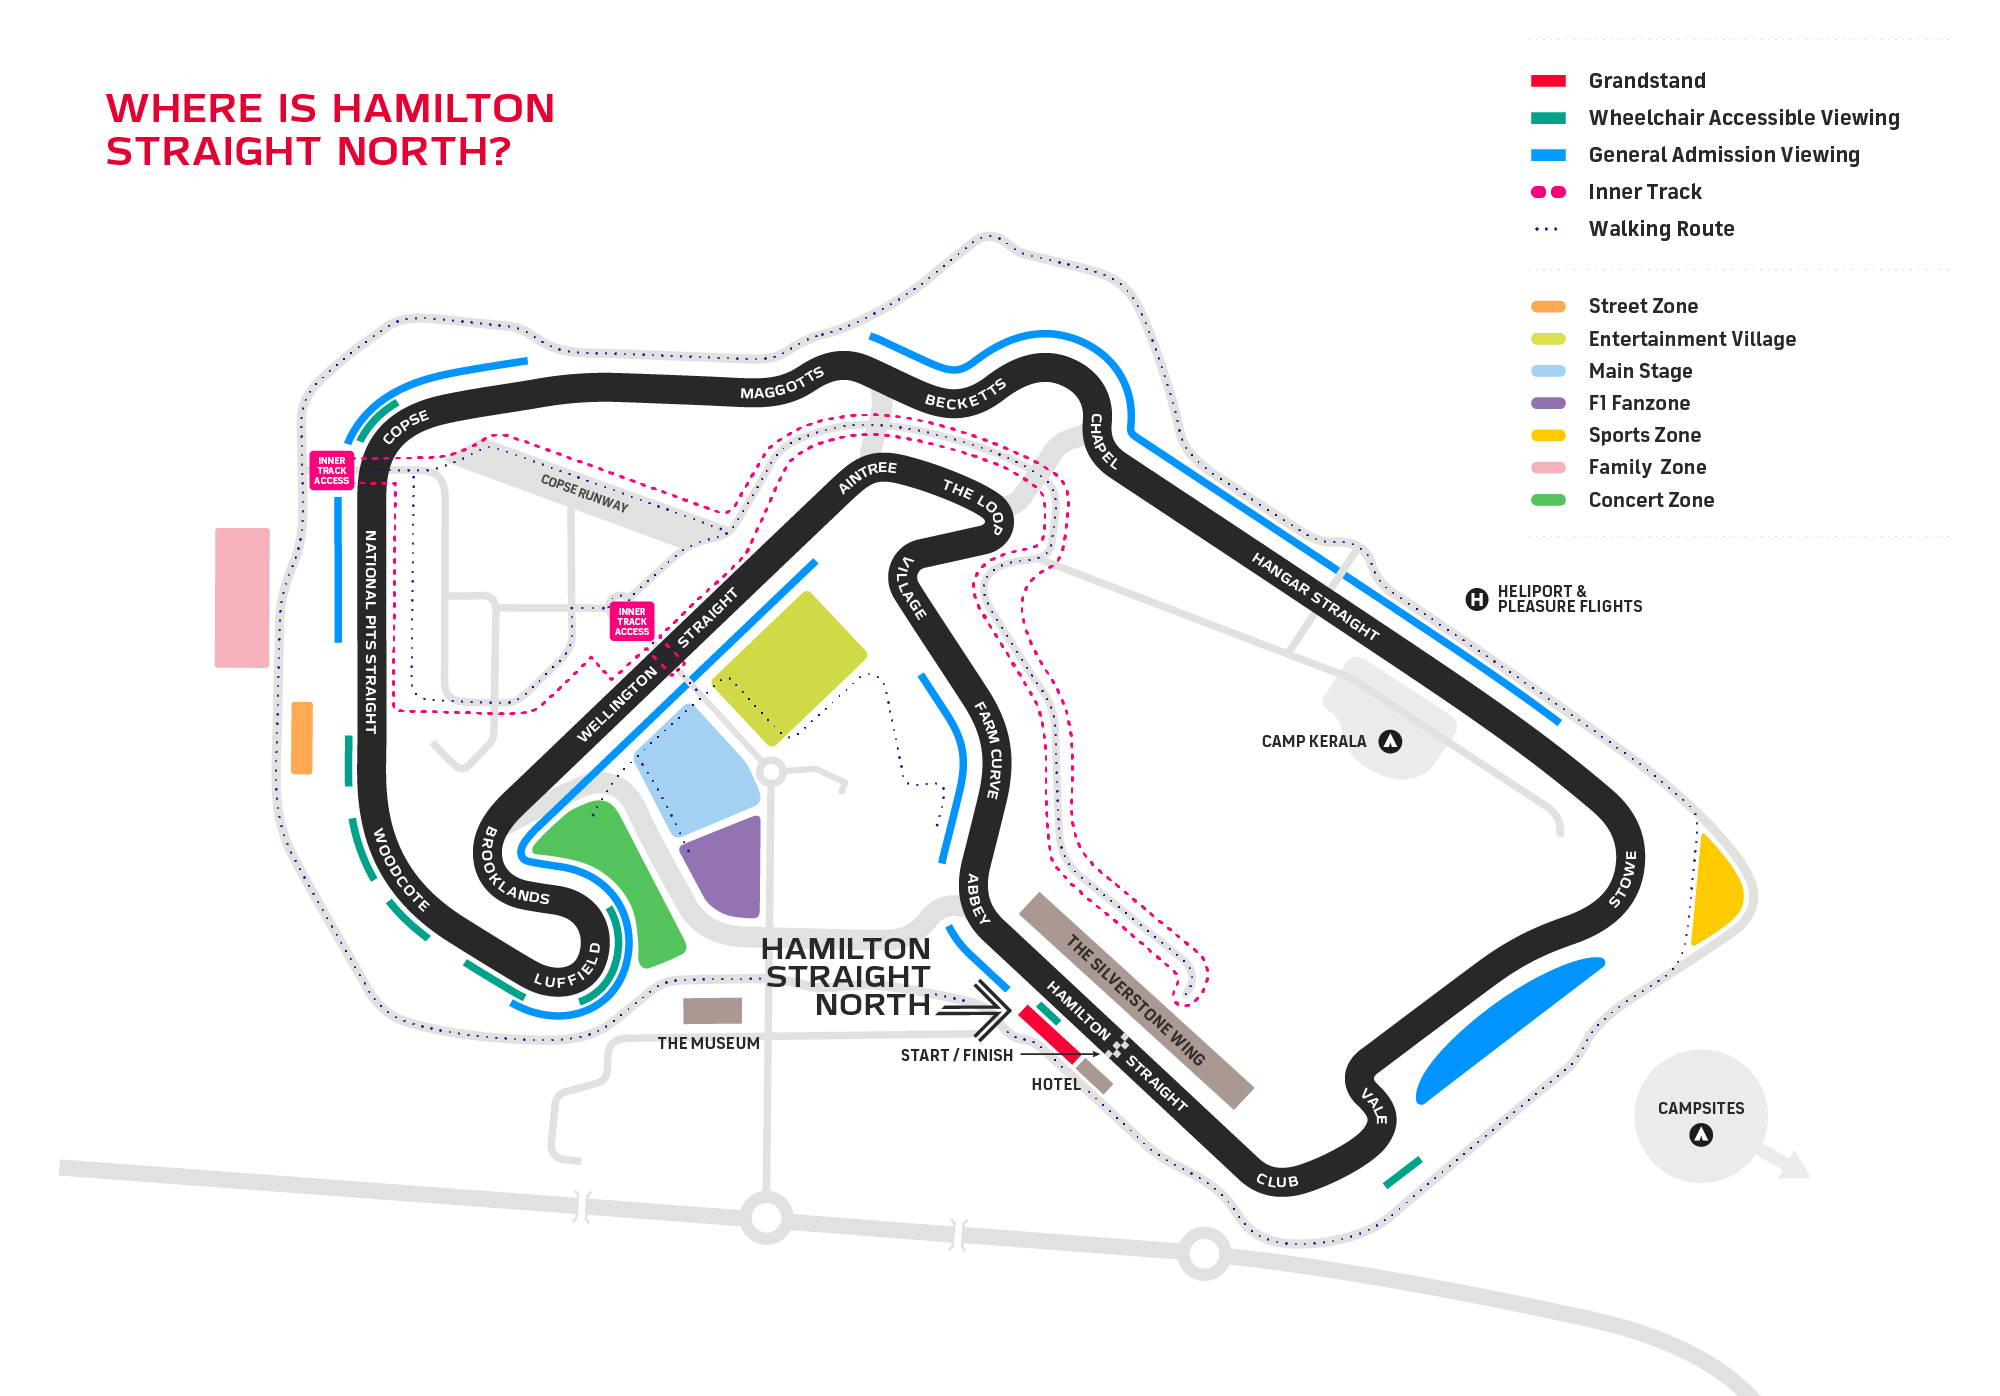 Formula 1 British Grand Prix Area Overview Silverstone